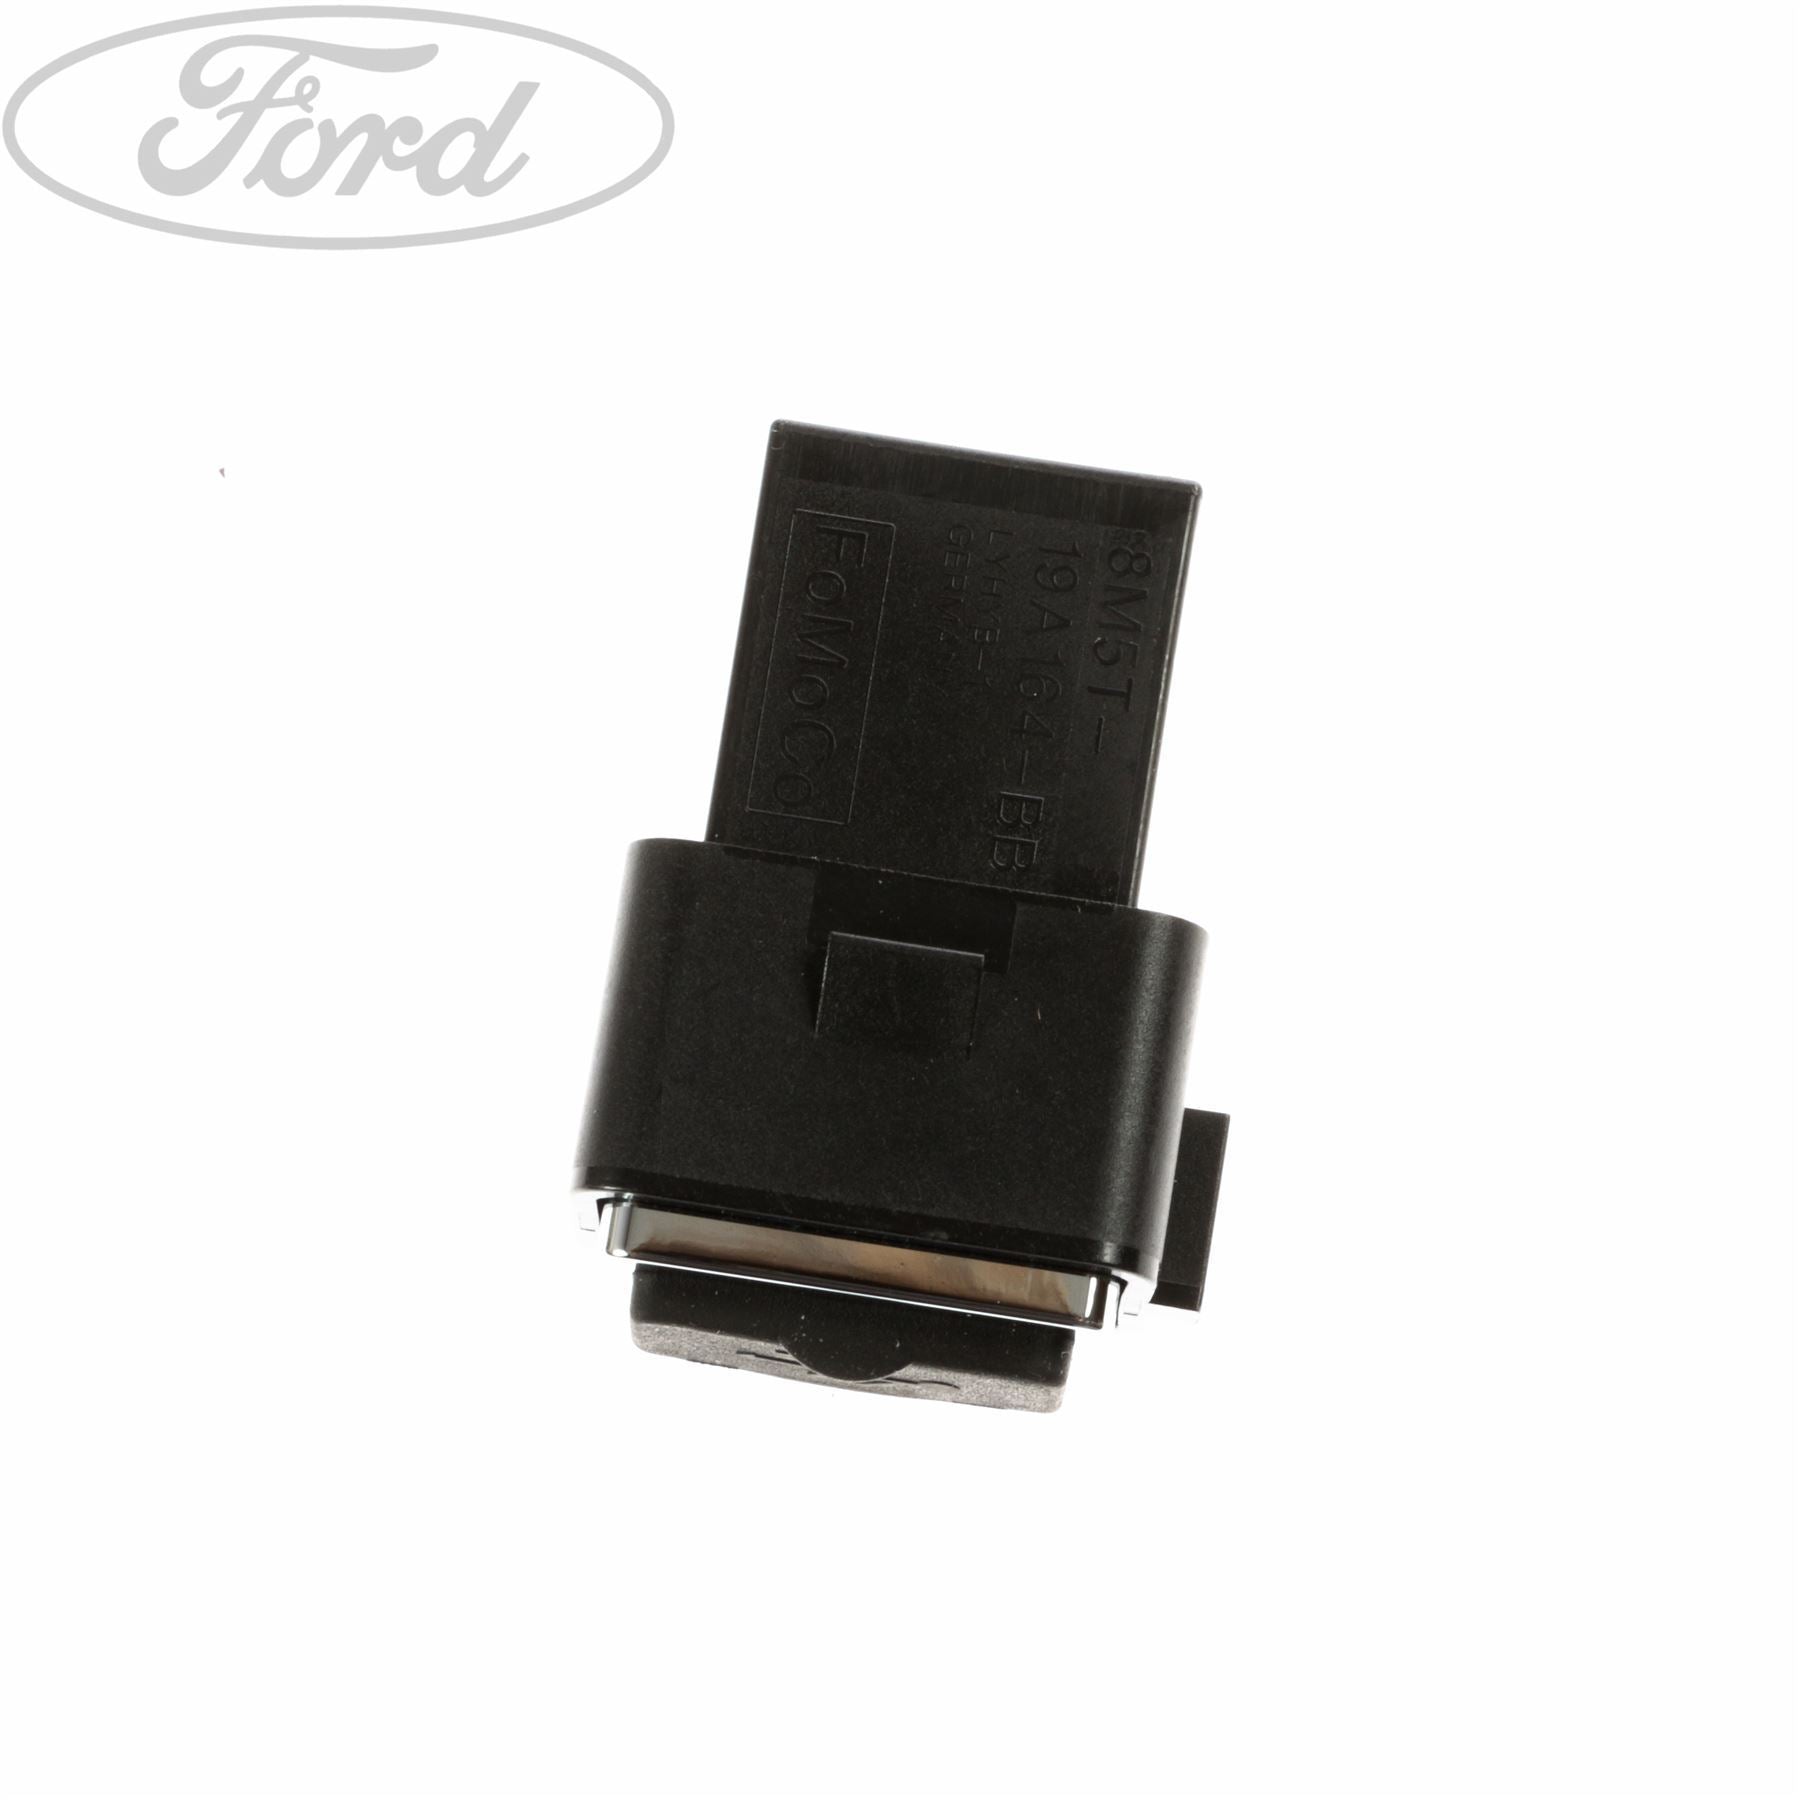 Ford Schalter & Sicherungen, Elektrik-Ersatzteile für alle Ford Modelle, Seite 5